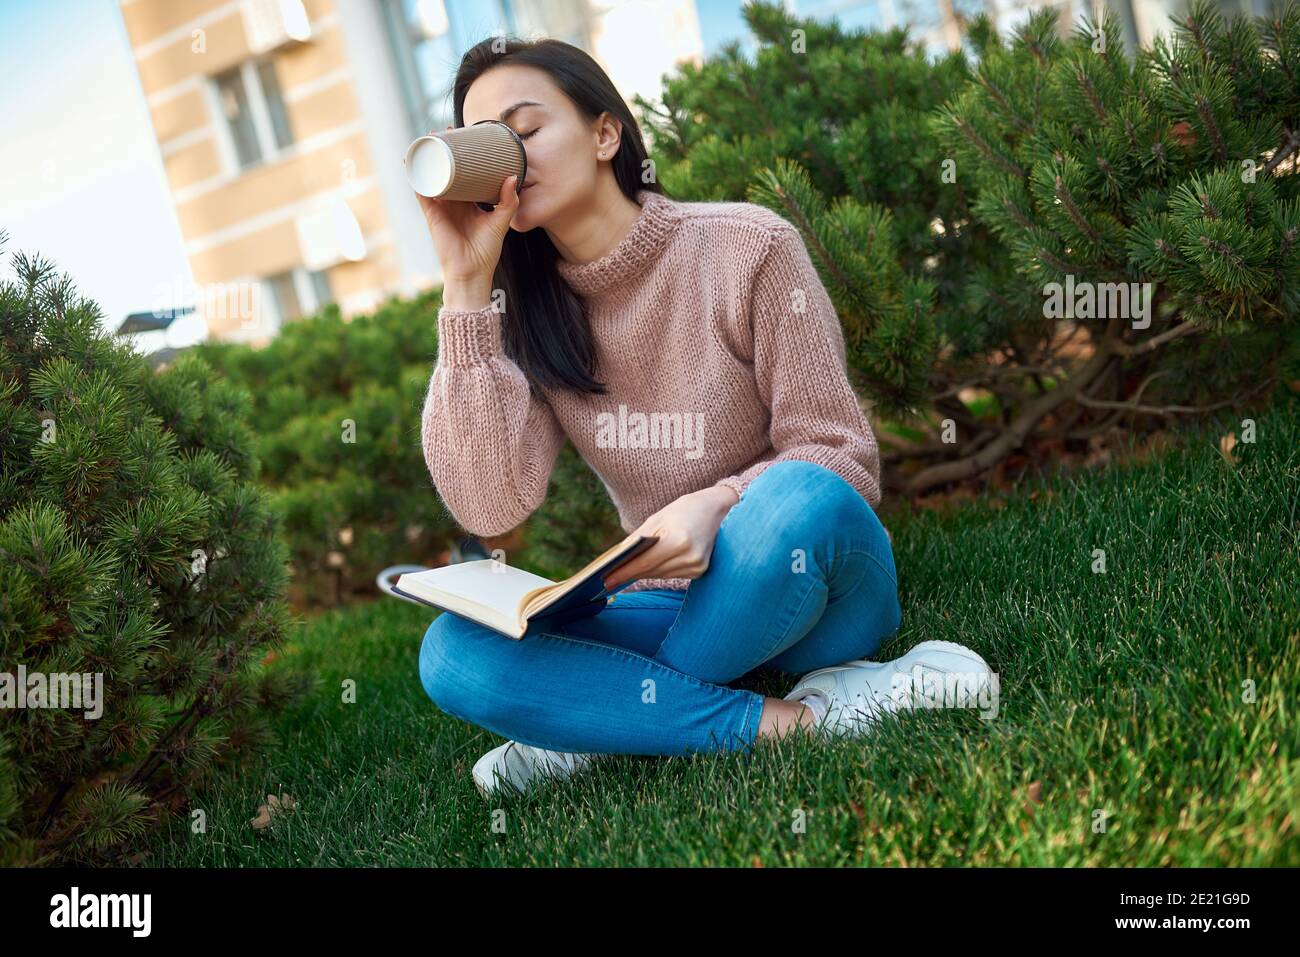 Charmante junge Dame trinken Latte aus einem Papierglas und Setzen Sie das Copybook, während Sie auf grünem Gras innen sitzen Ein Türgarten Stockfoto